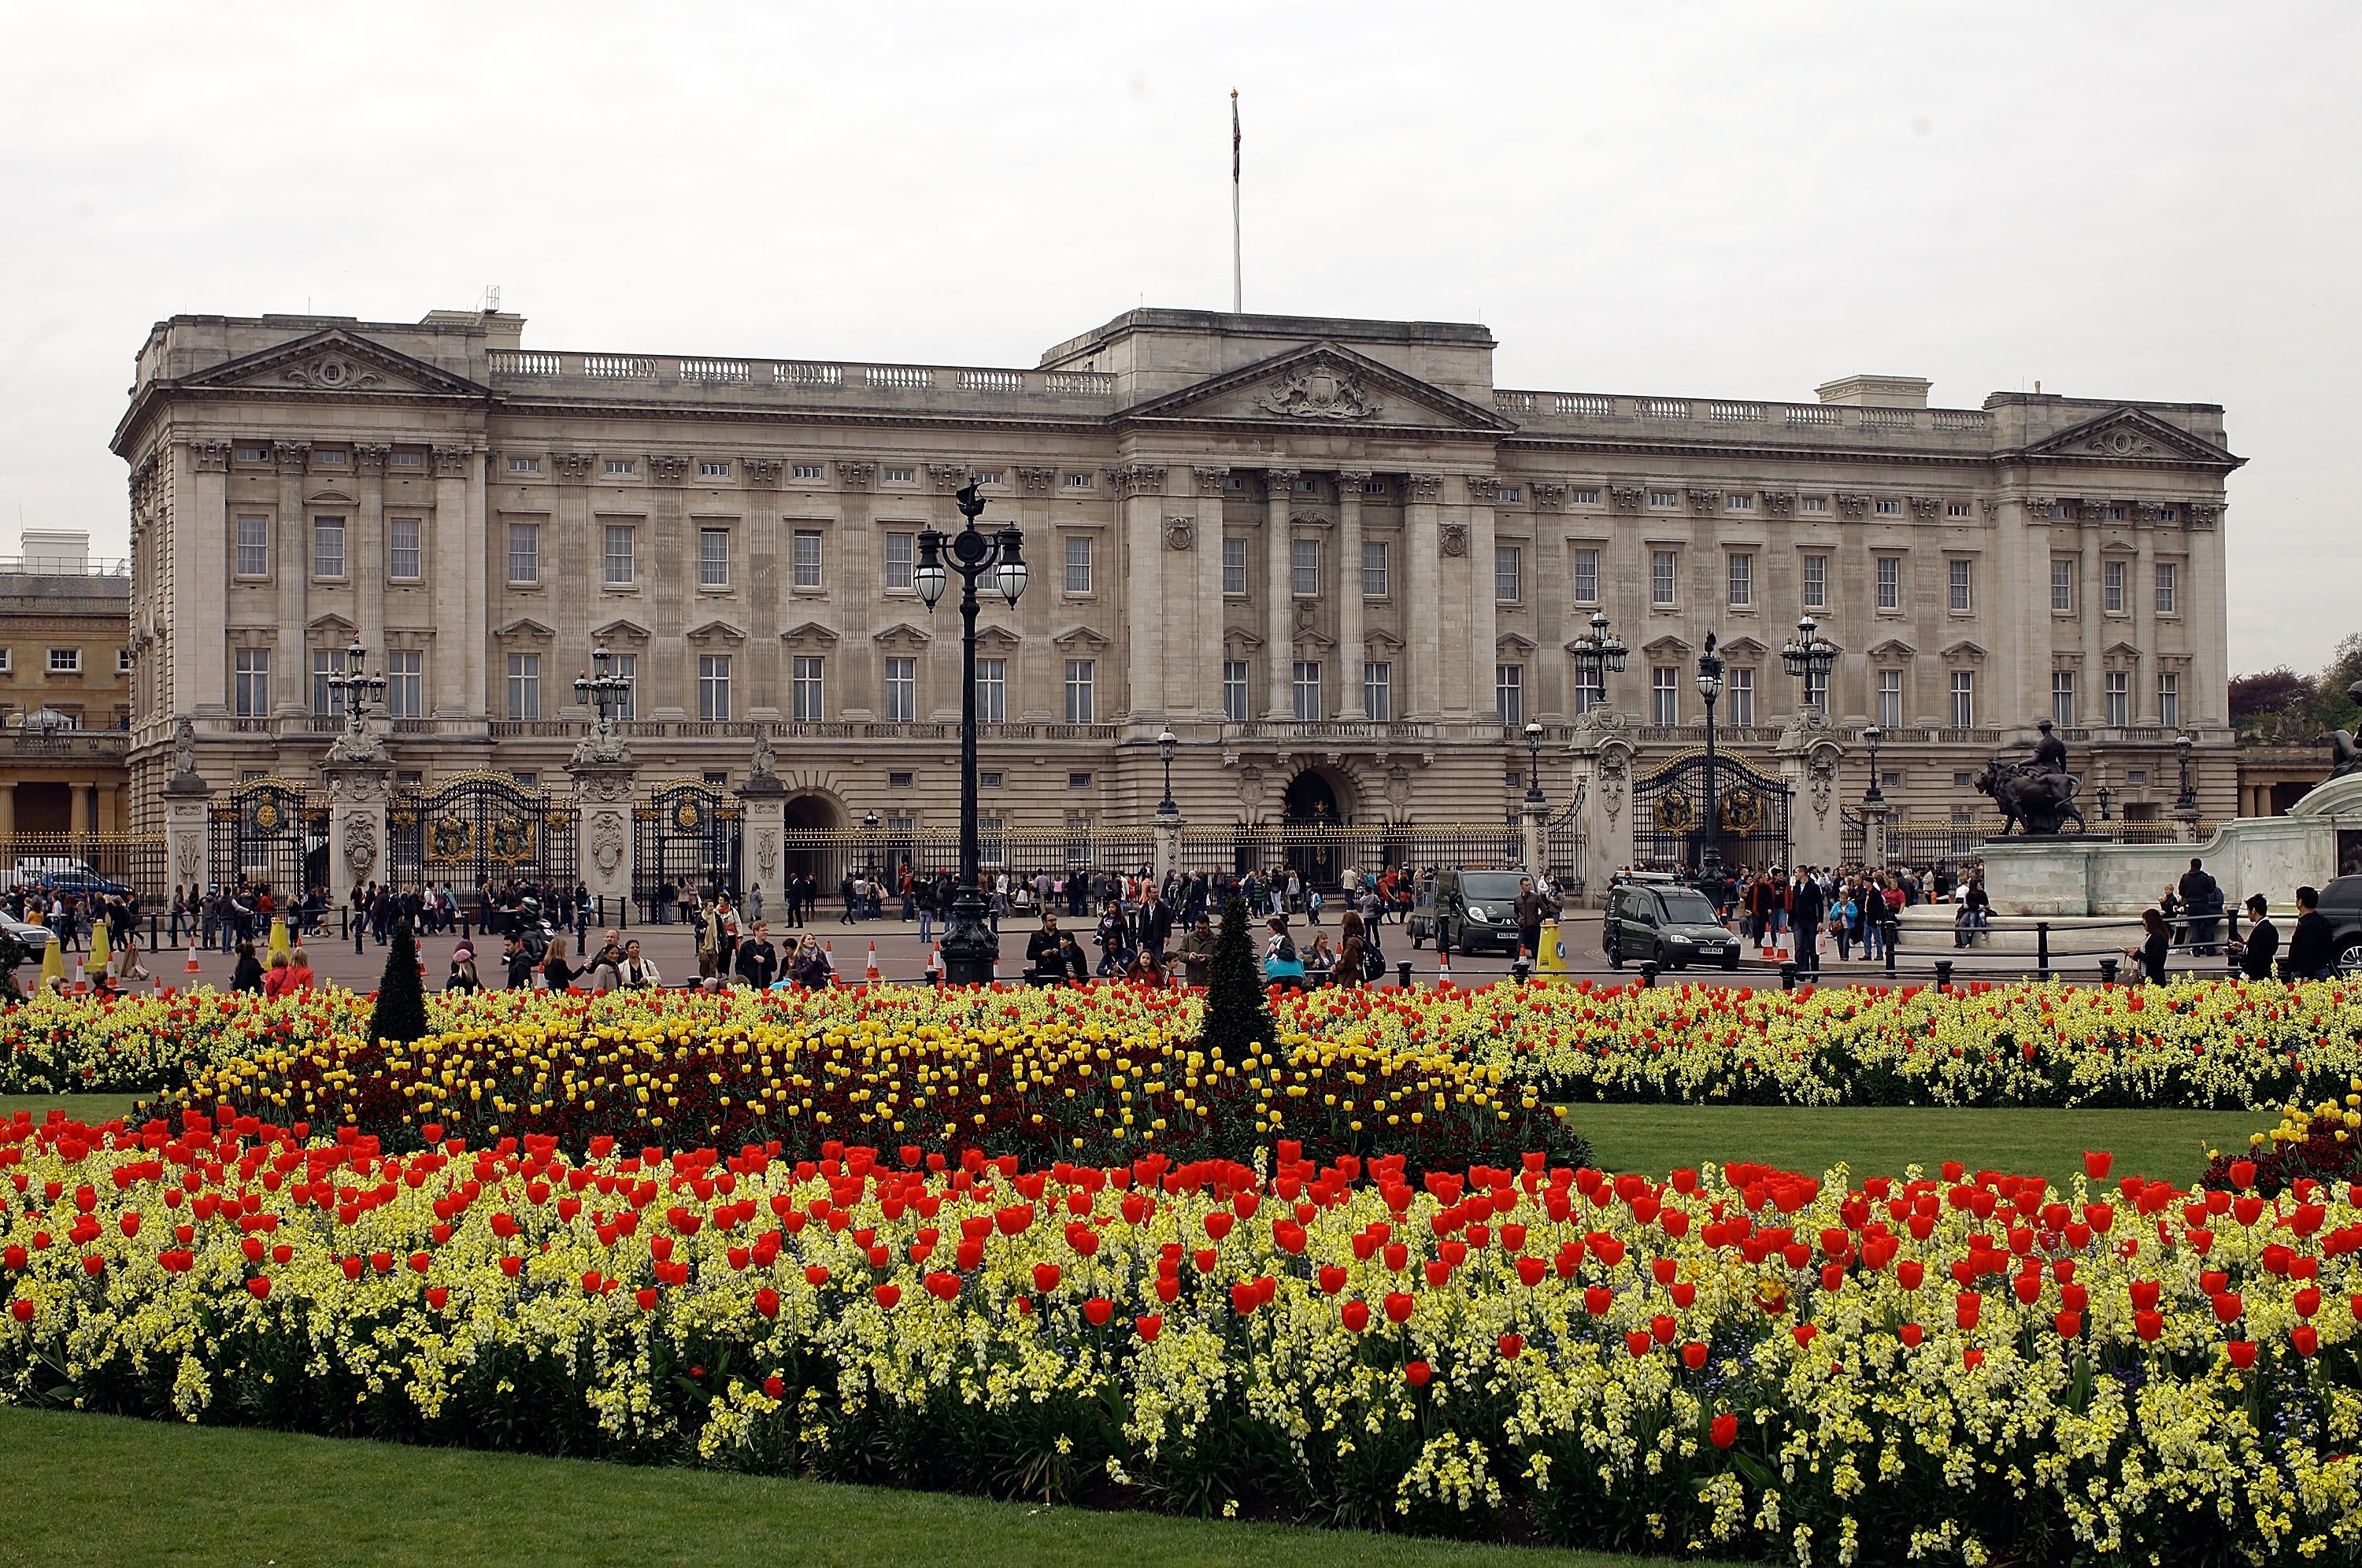 Buckingham Palace, History facts, Inside residence, Queen Elizabeth II, 3000x2000 HD Desktop